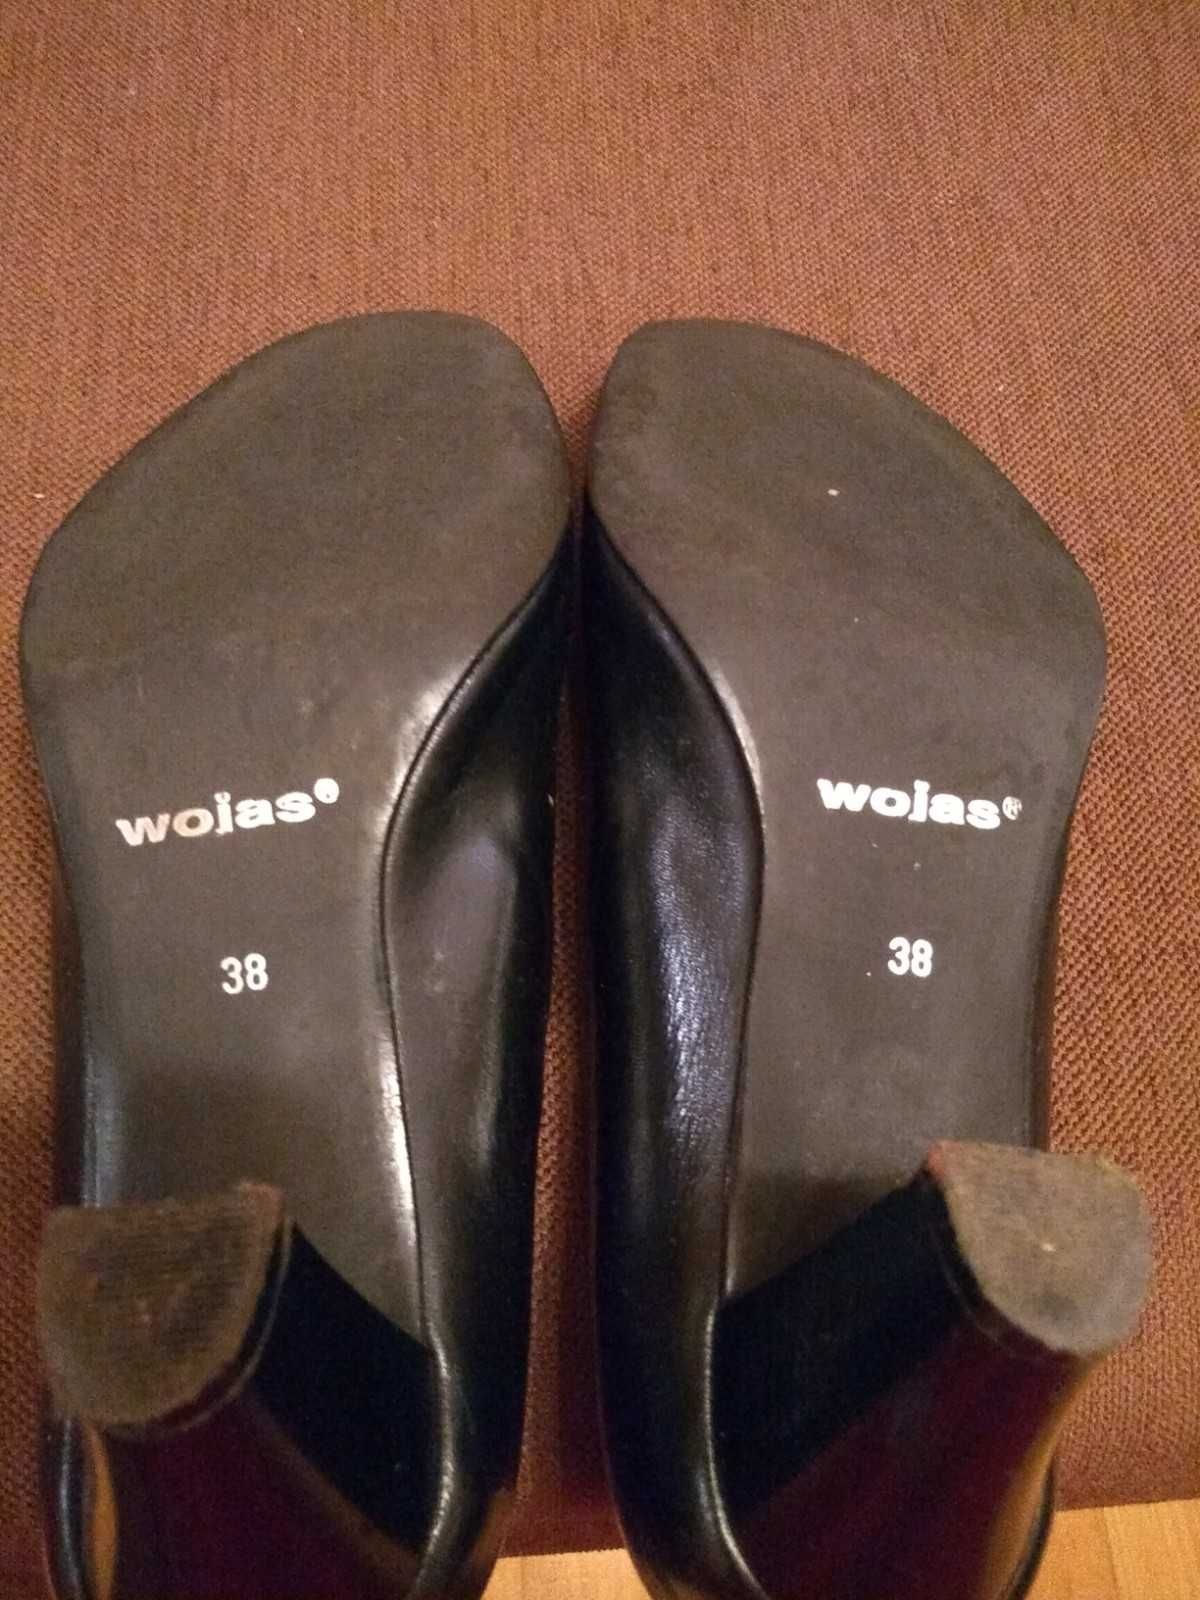 Czółenka na obcasie / buty / pantofle / Wojas / czarne / rozm, 38